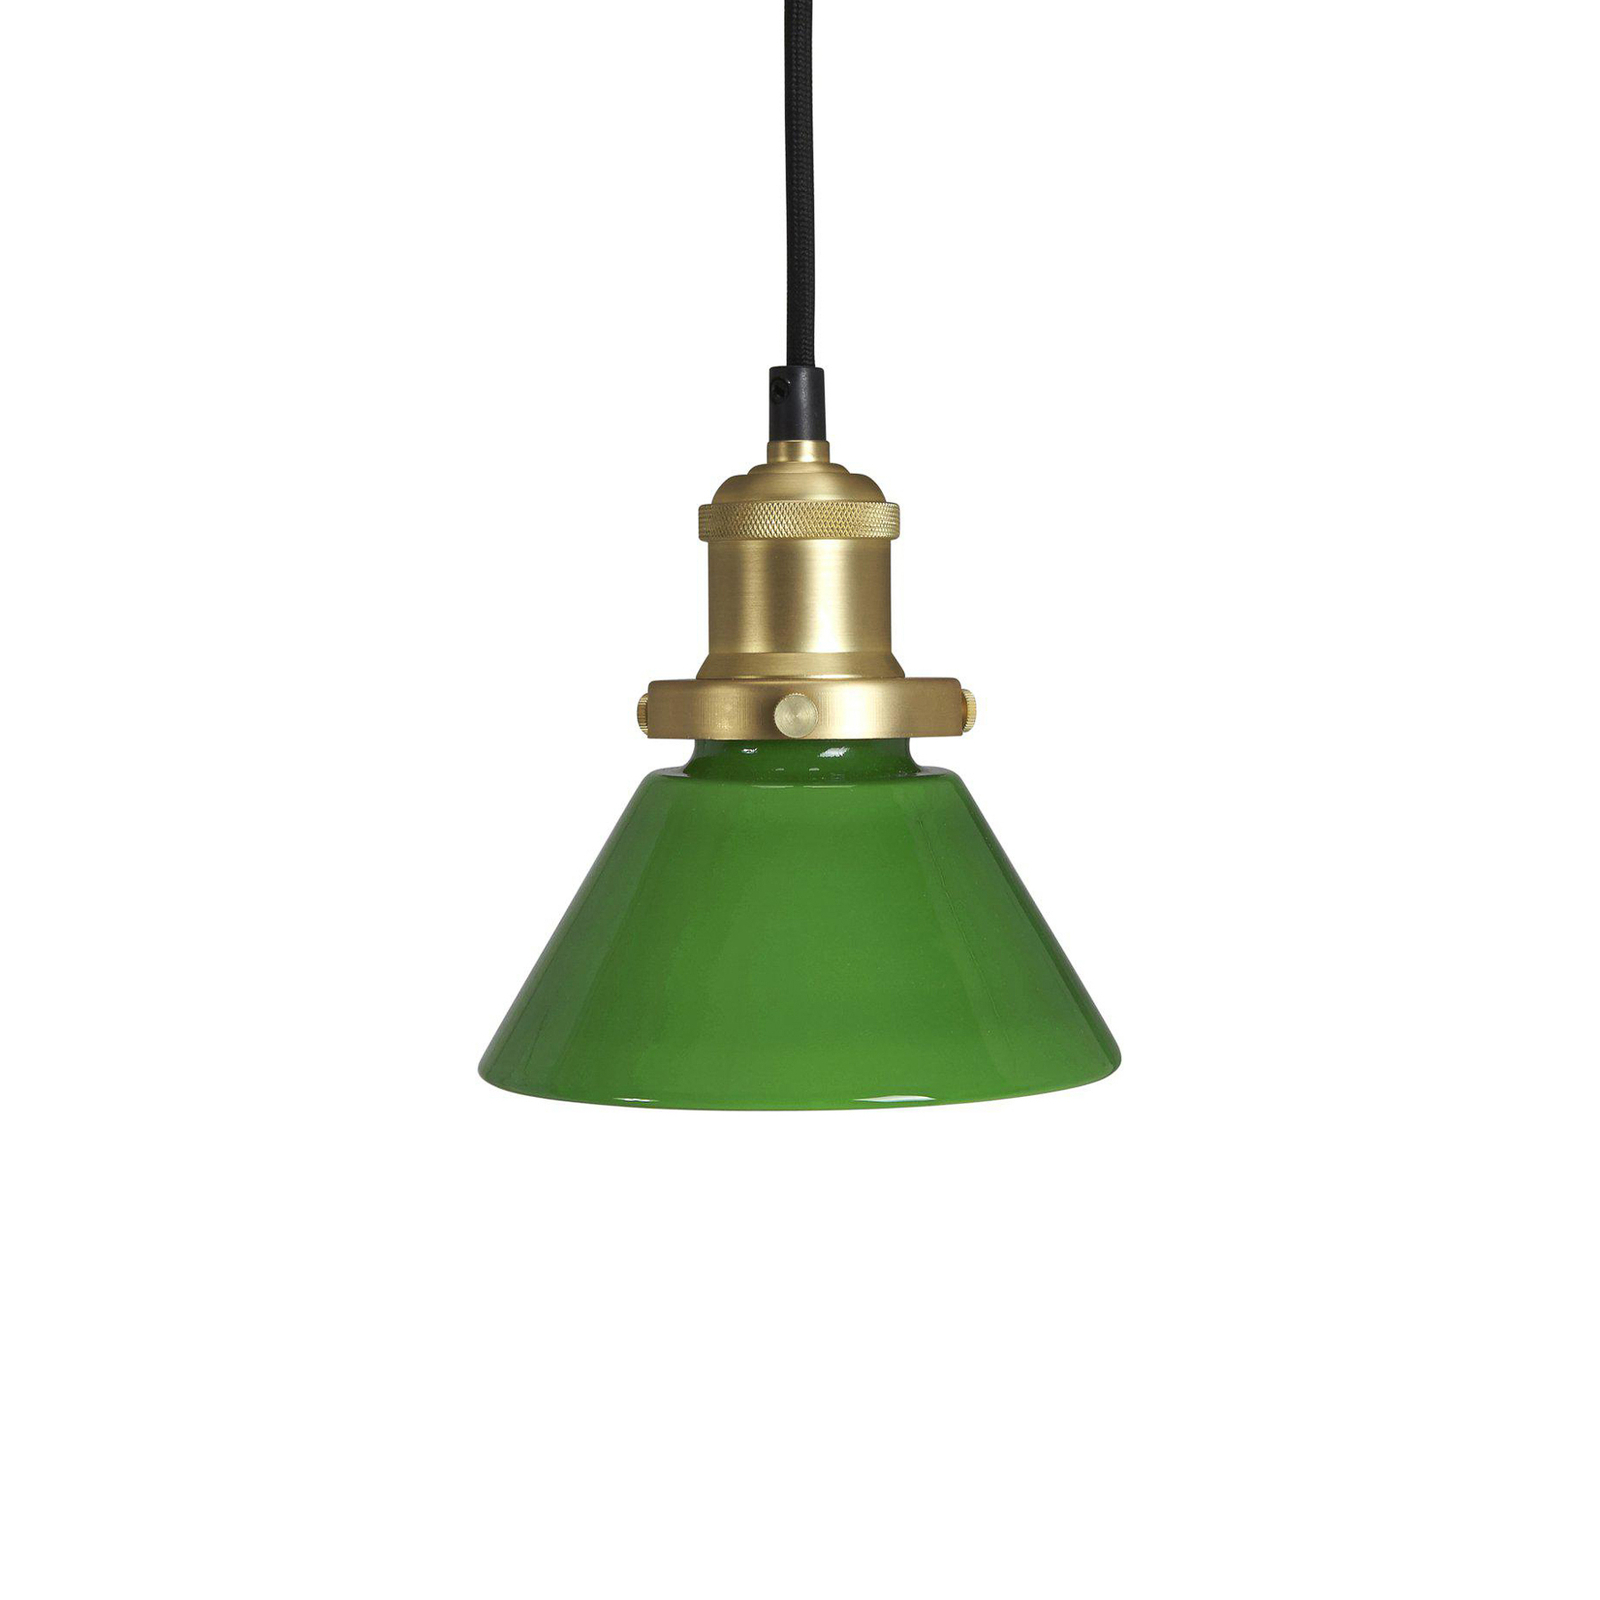 PR Home lampada a sospensione August, verde, Ø 15 cm